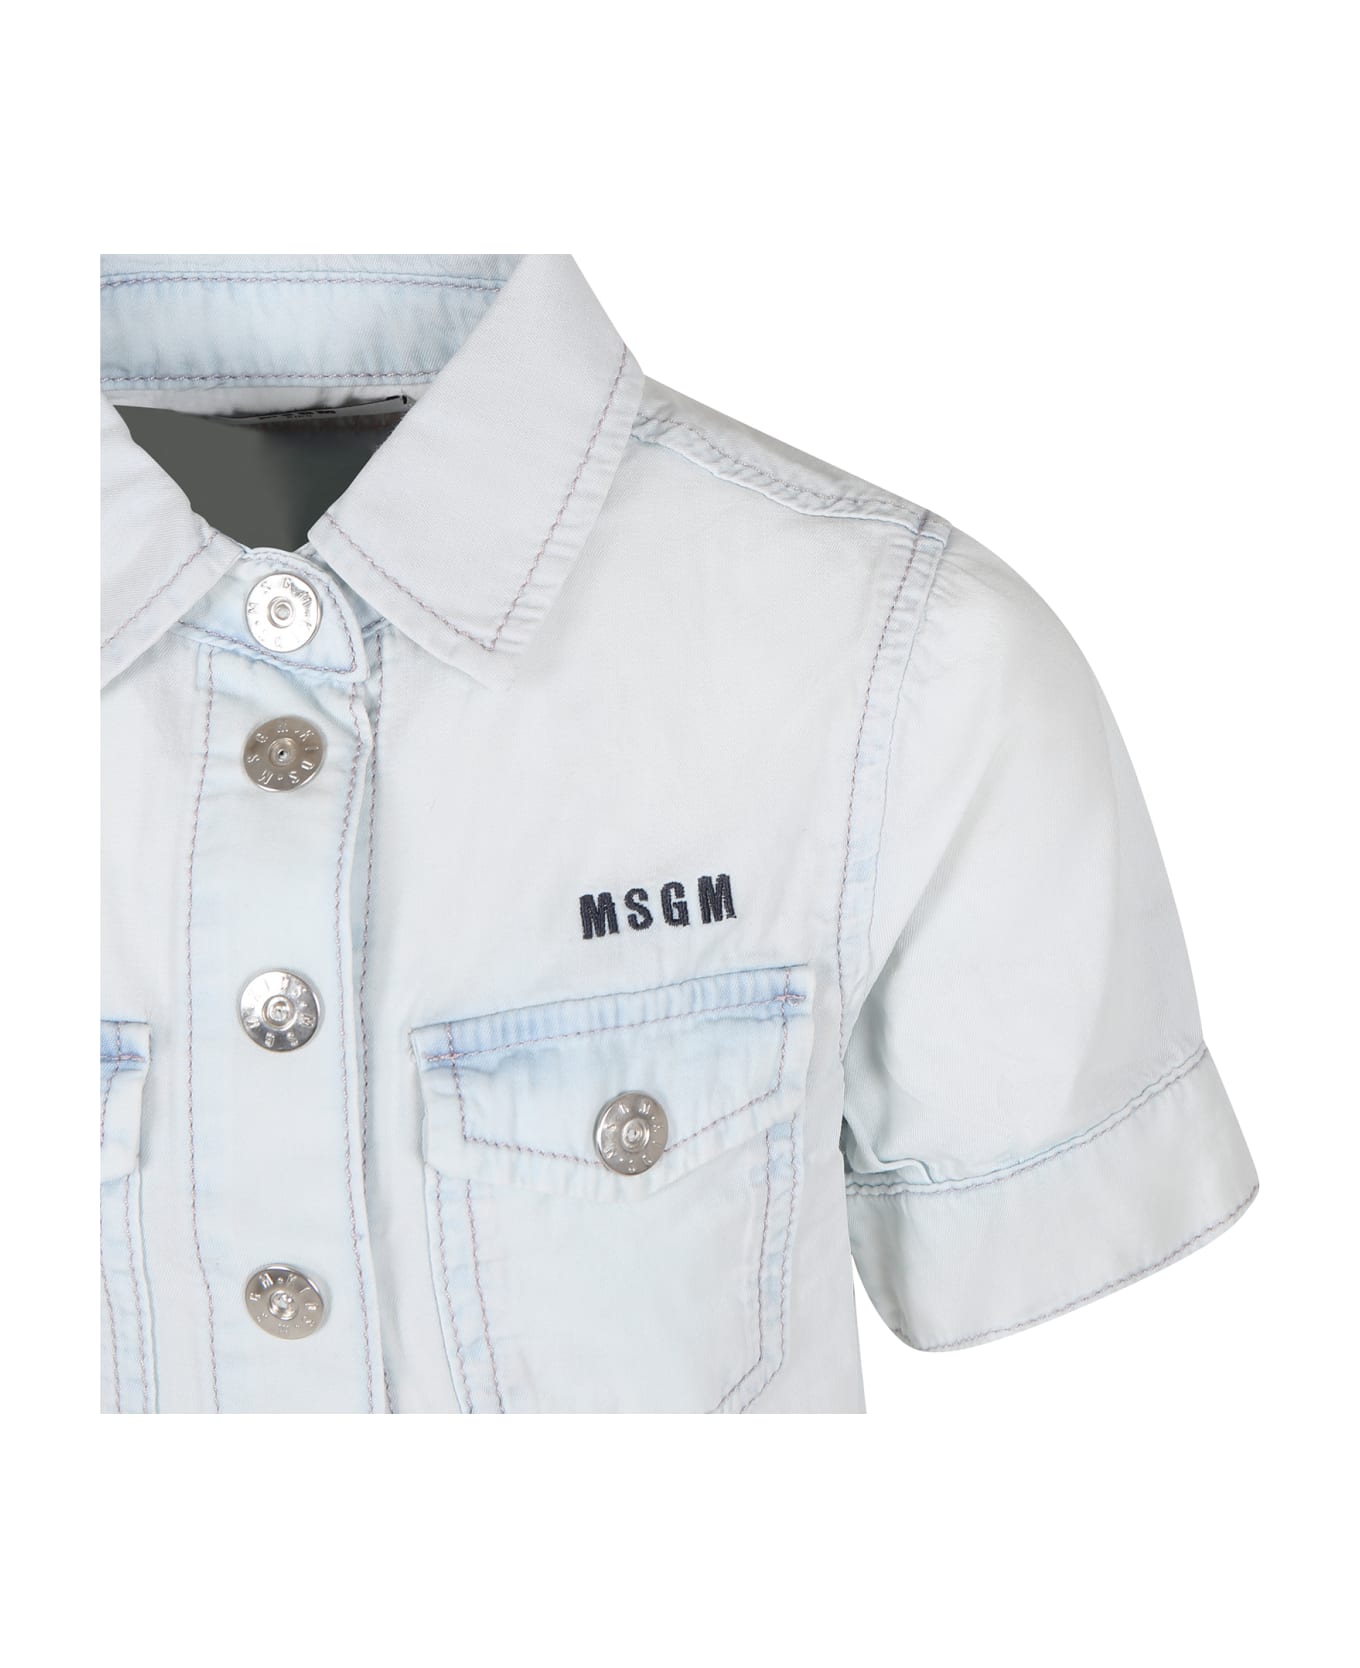 MSGM Light Blue Shirt For Girl With Logo - Denim シャツ